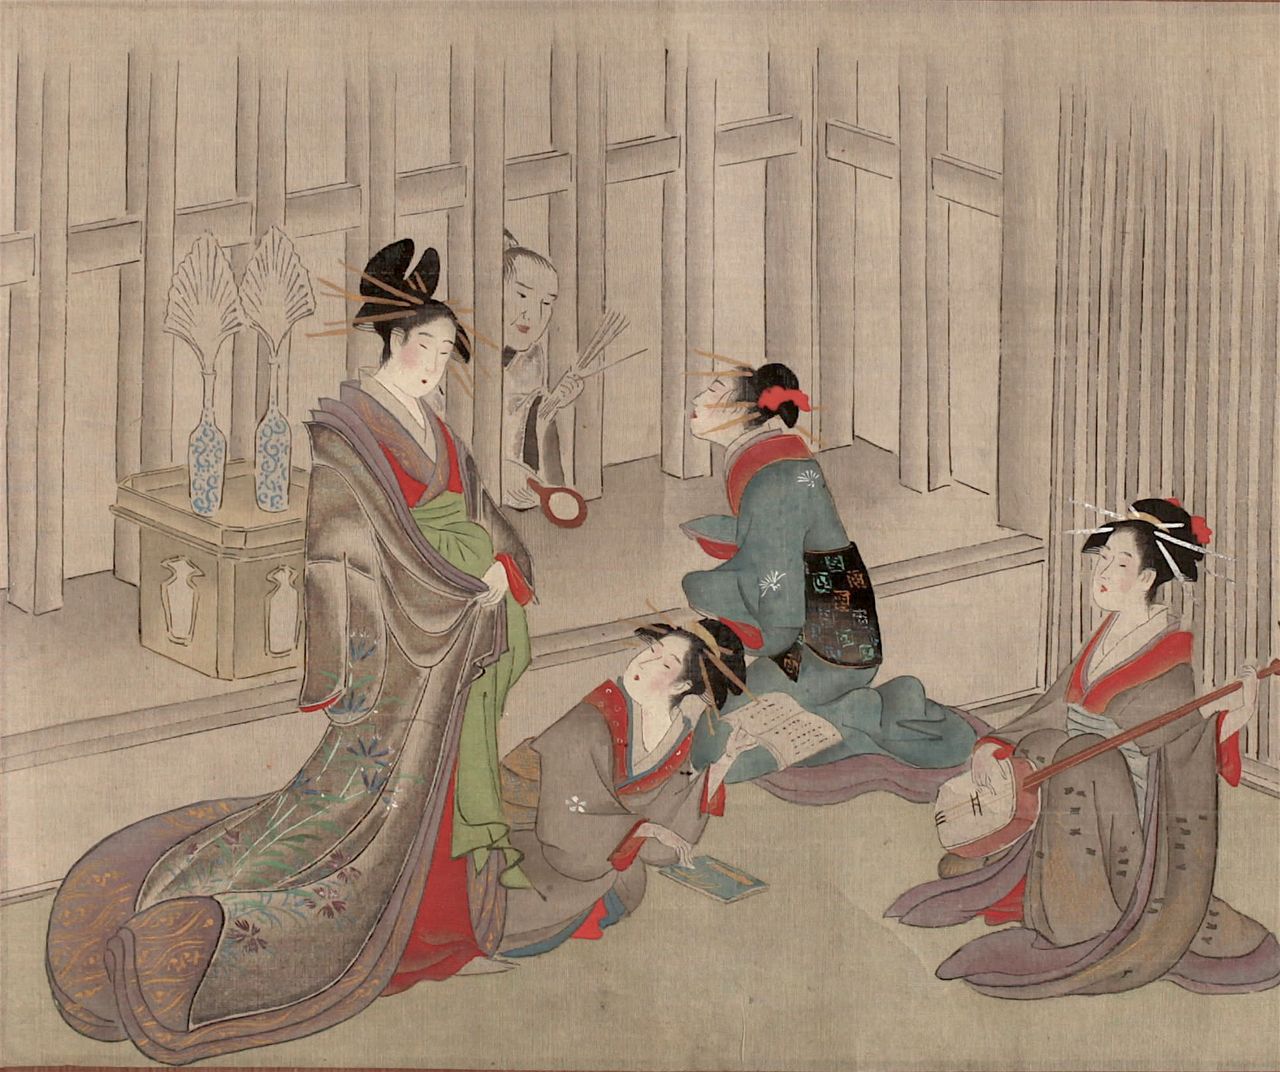 Prostitutas en un harimise, separado de la calle por una celosía, en Yoshiwara jūniji (Yoshiwara a las doce en punto). (Cortesía del Archivo Digital de la Universidad de Kansai)